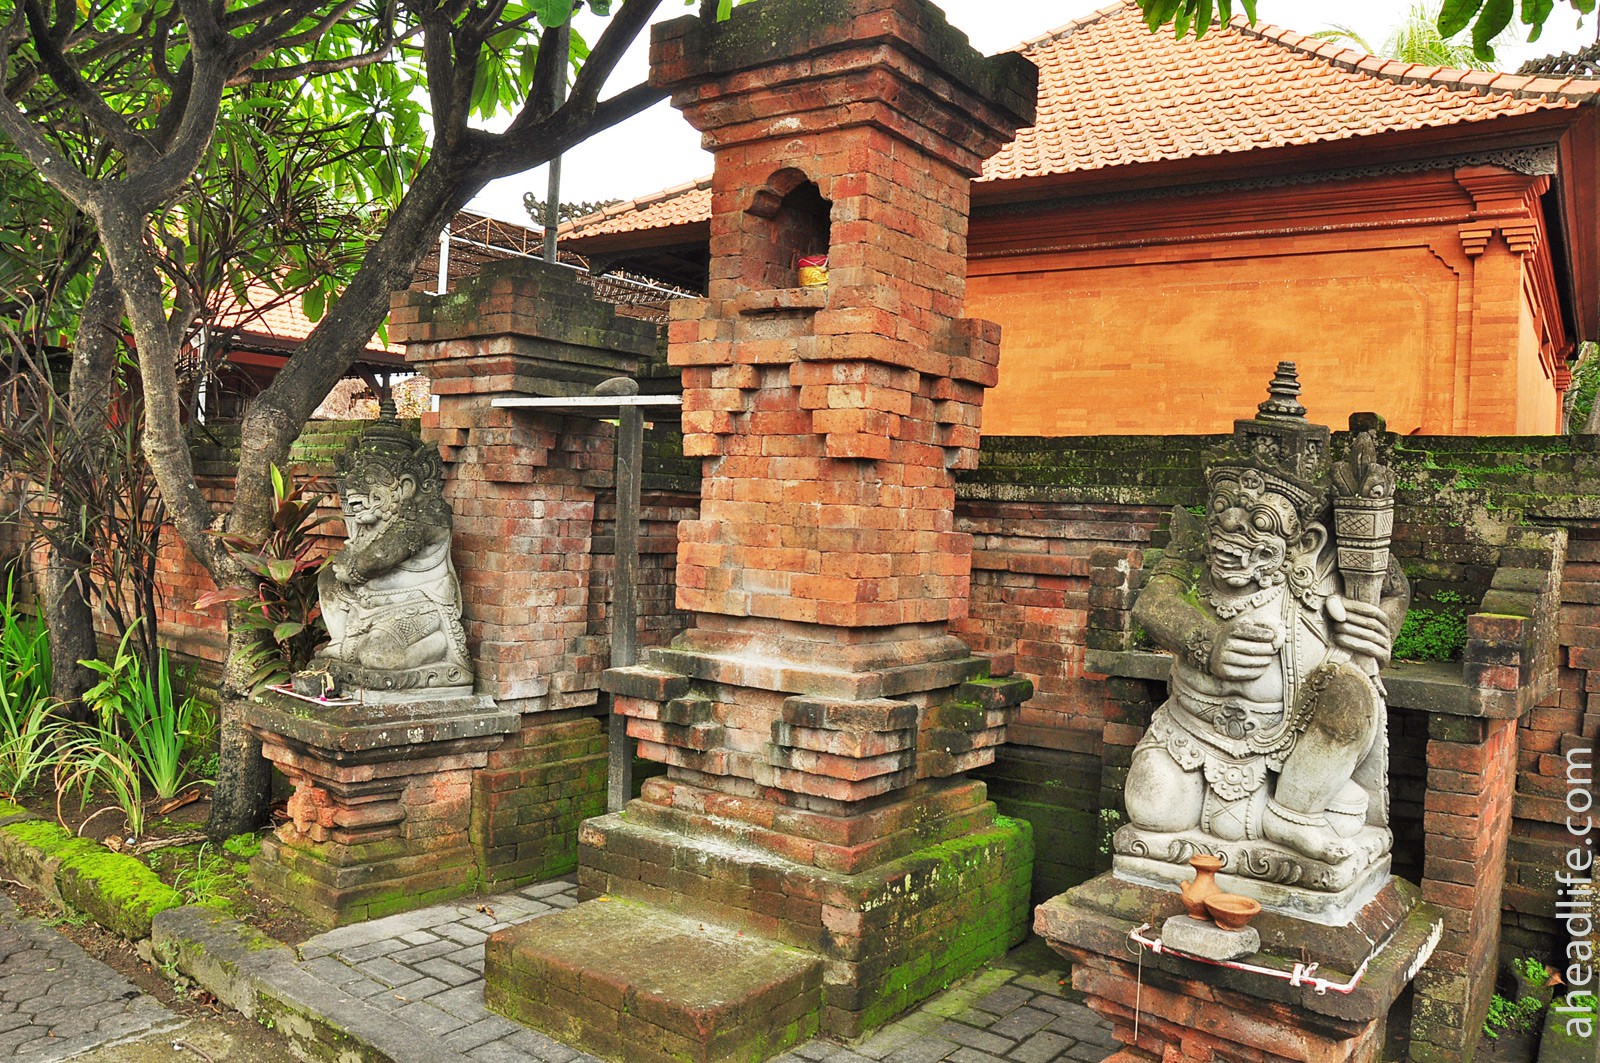 балийский храм